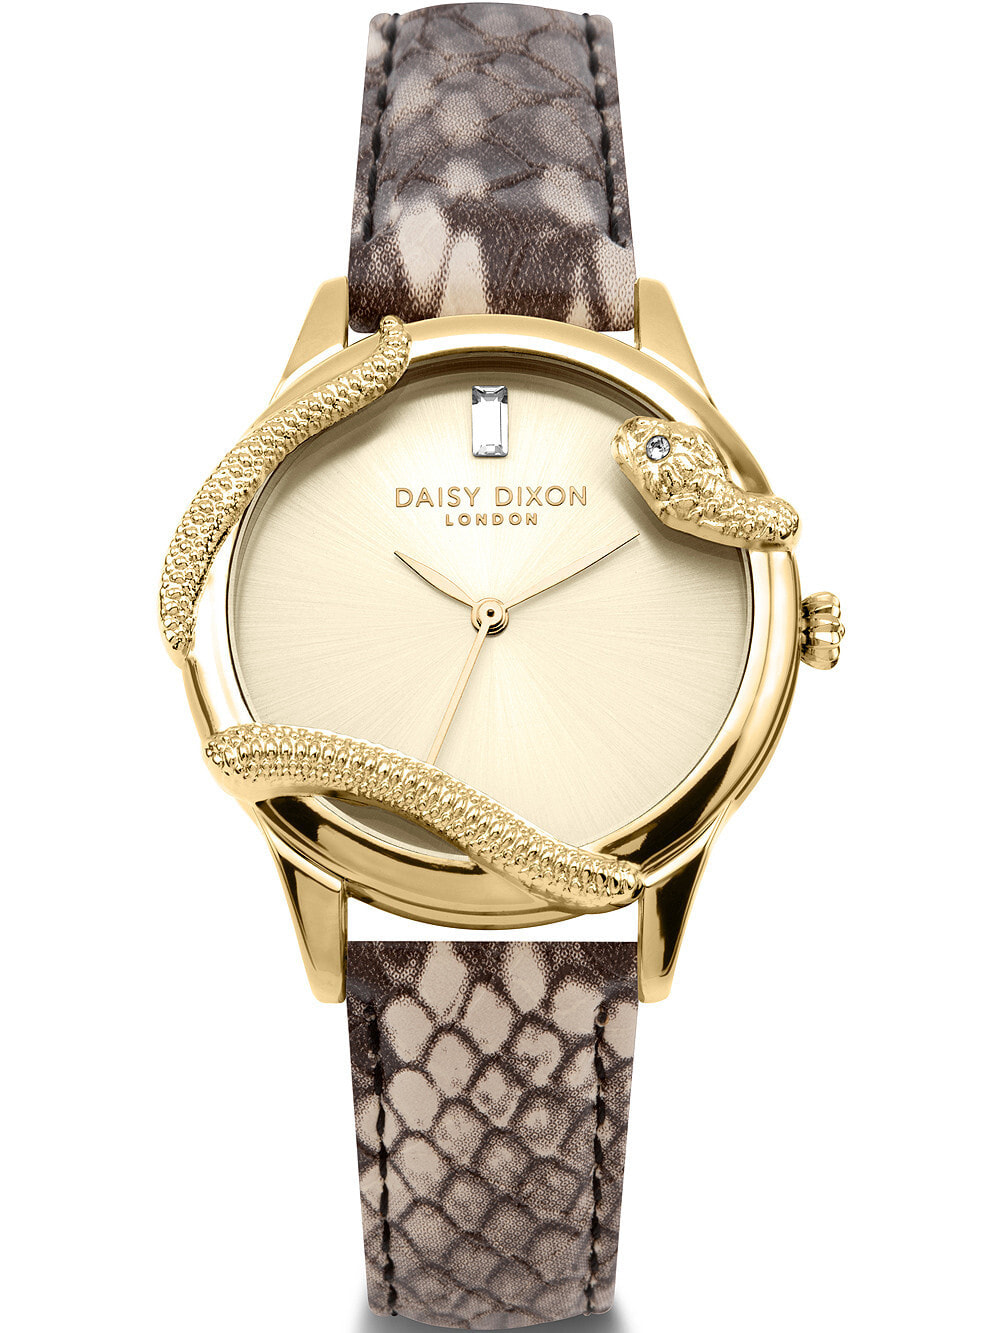 Женские наручные кварцевые часы DAISY DIXON ремешок из телячьей кожи. Водонепроницаемость-3 АТМ. Защищенное от царапин минеральное стекло.